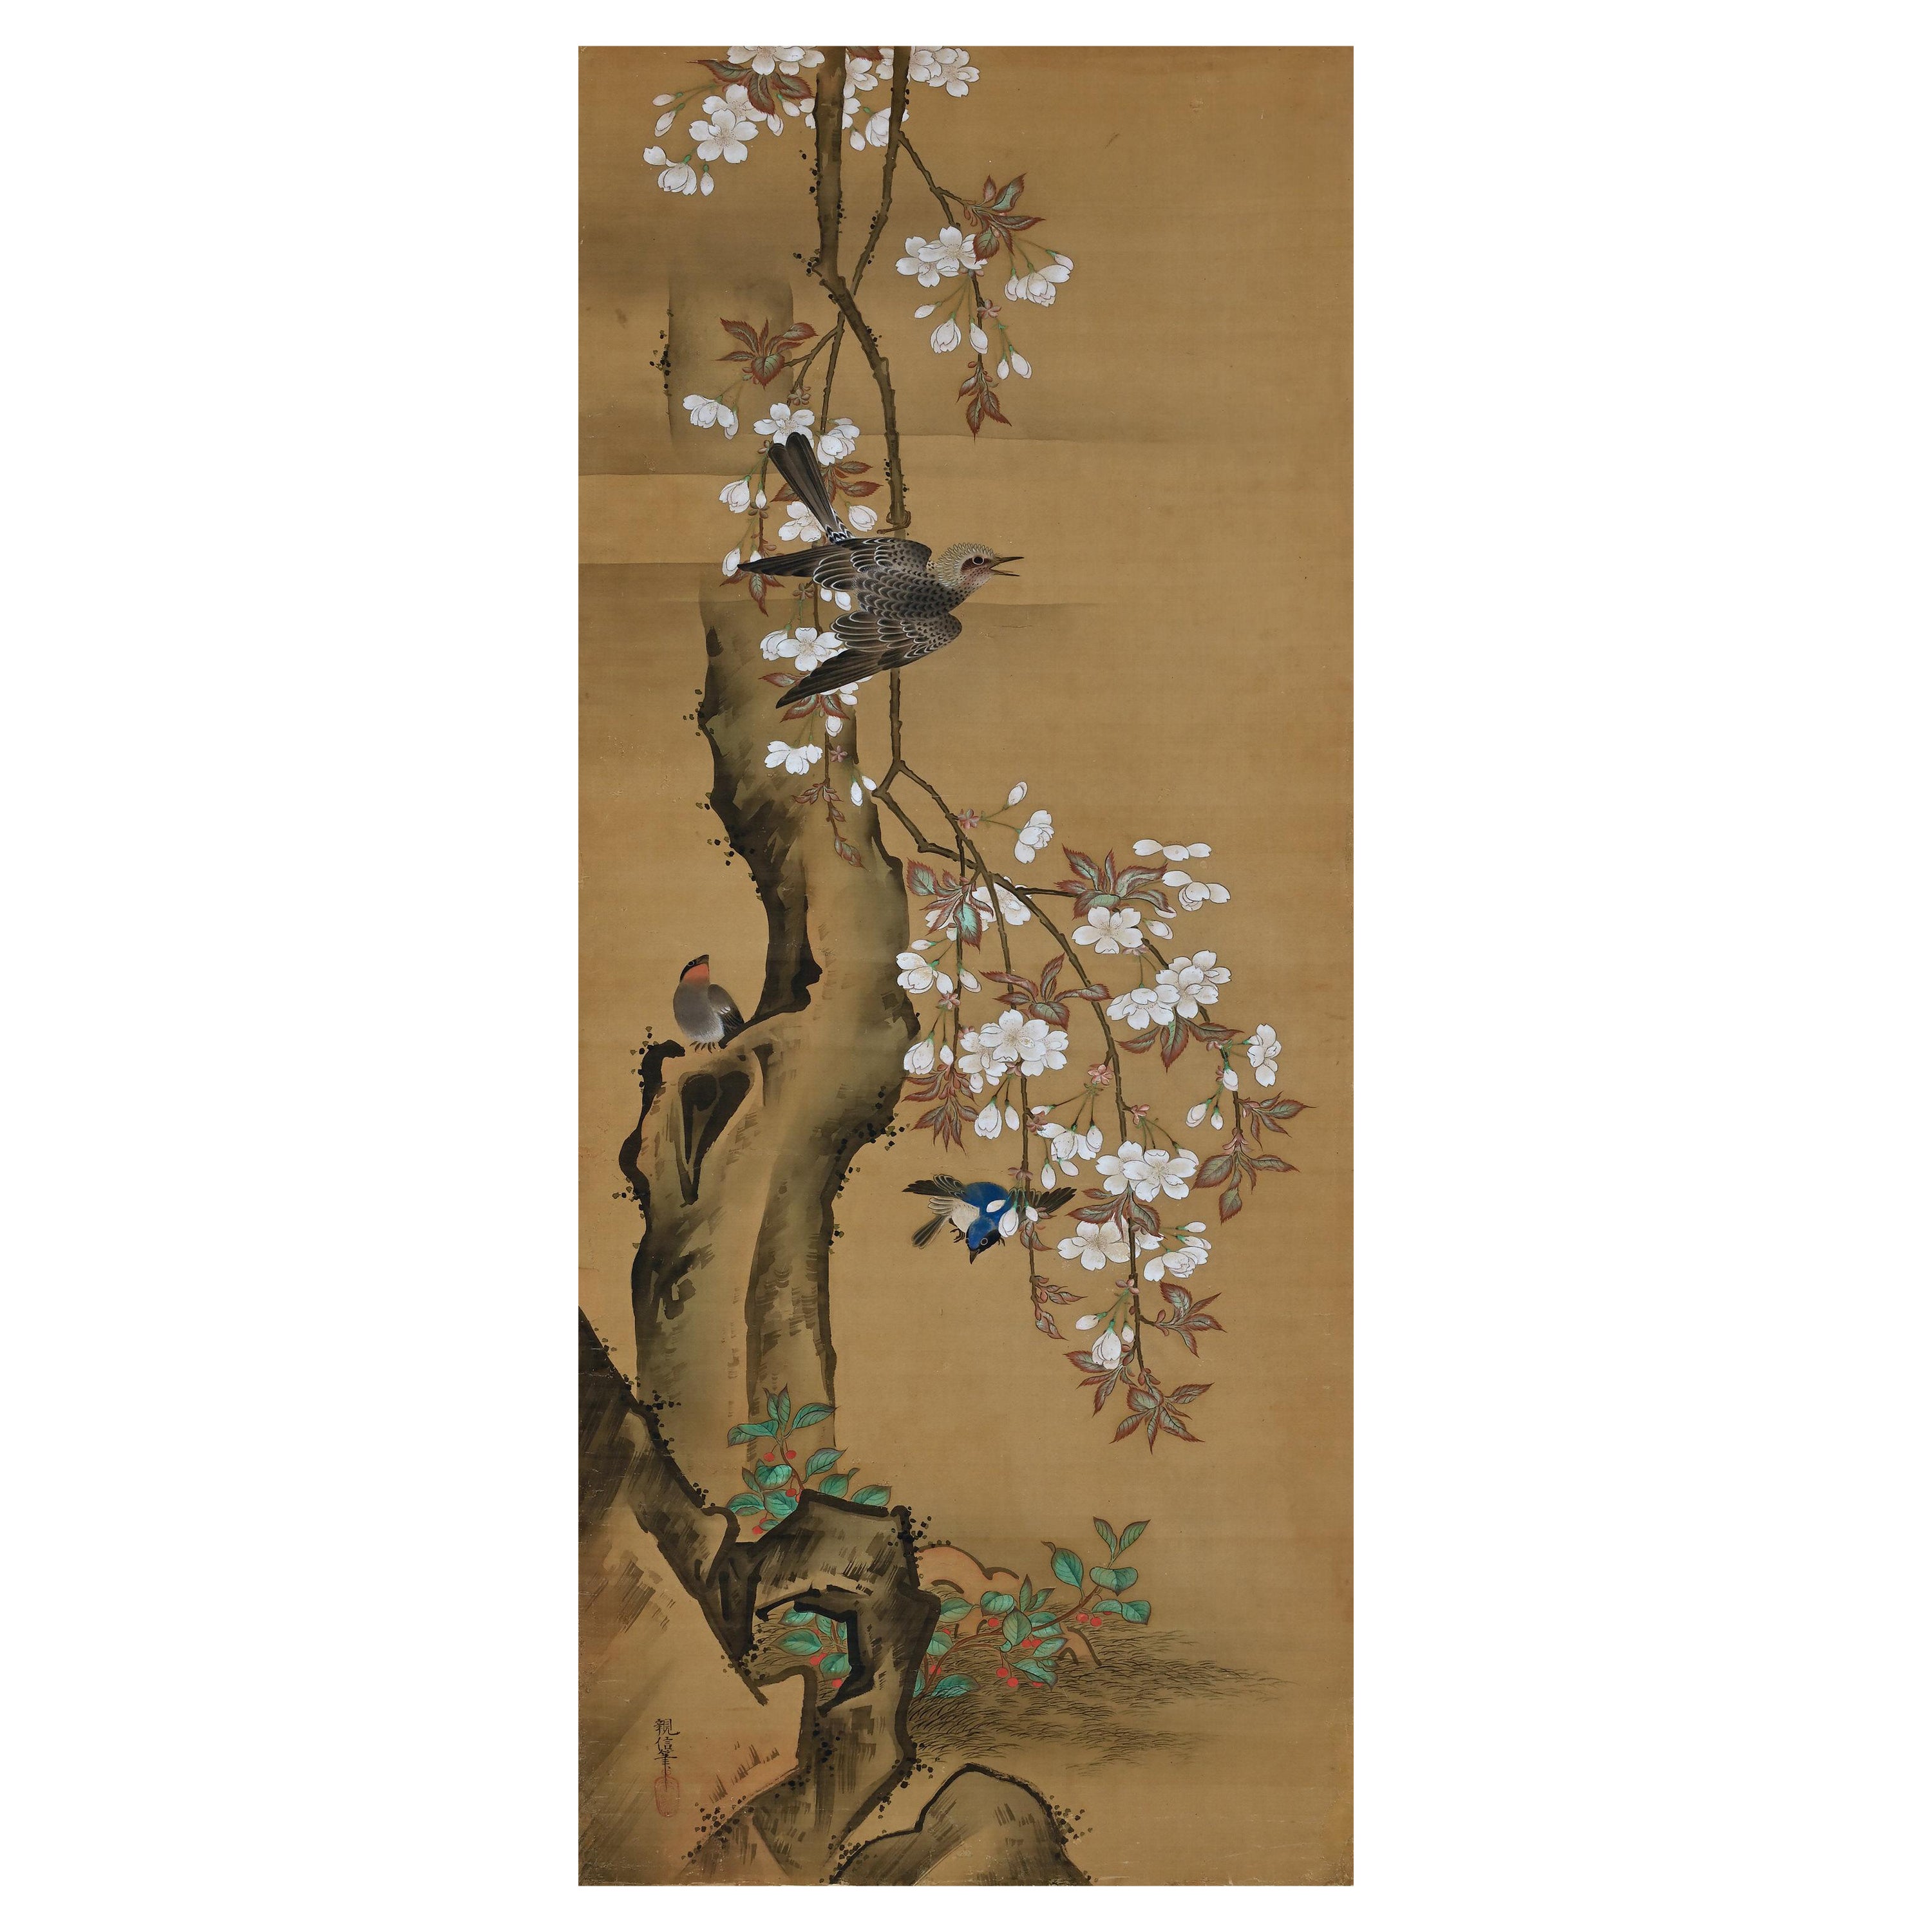 19th Century Japanese Silk Painting by Kano Chikanobu, Cherry Blossom & Birds